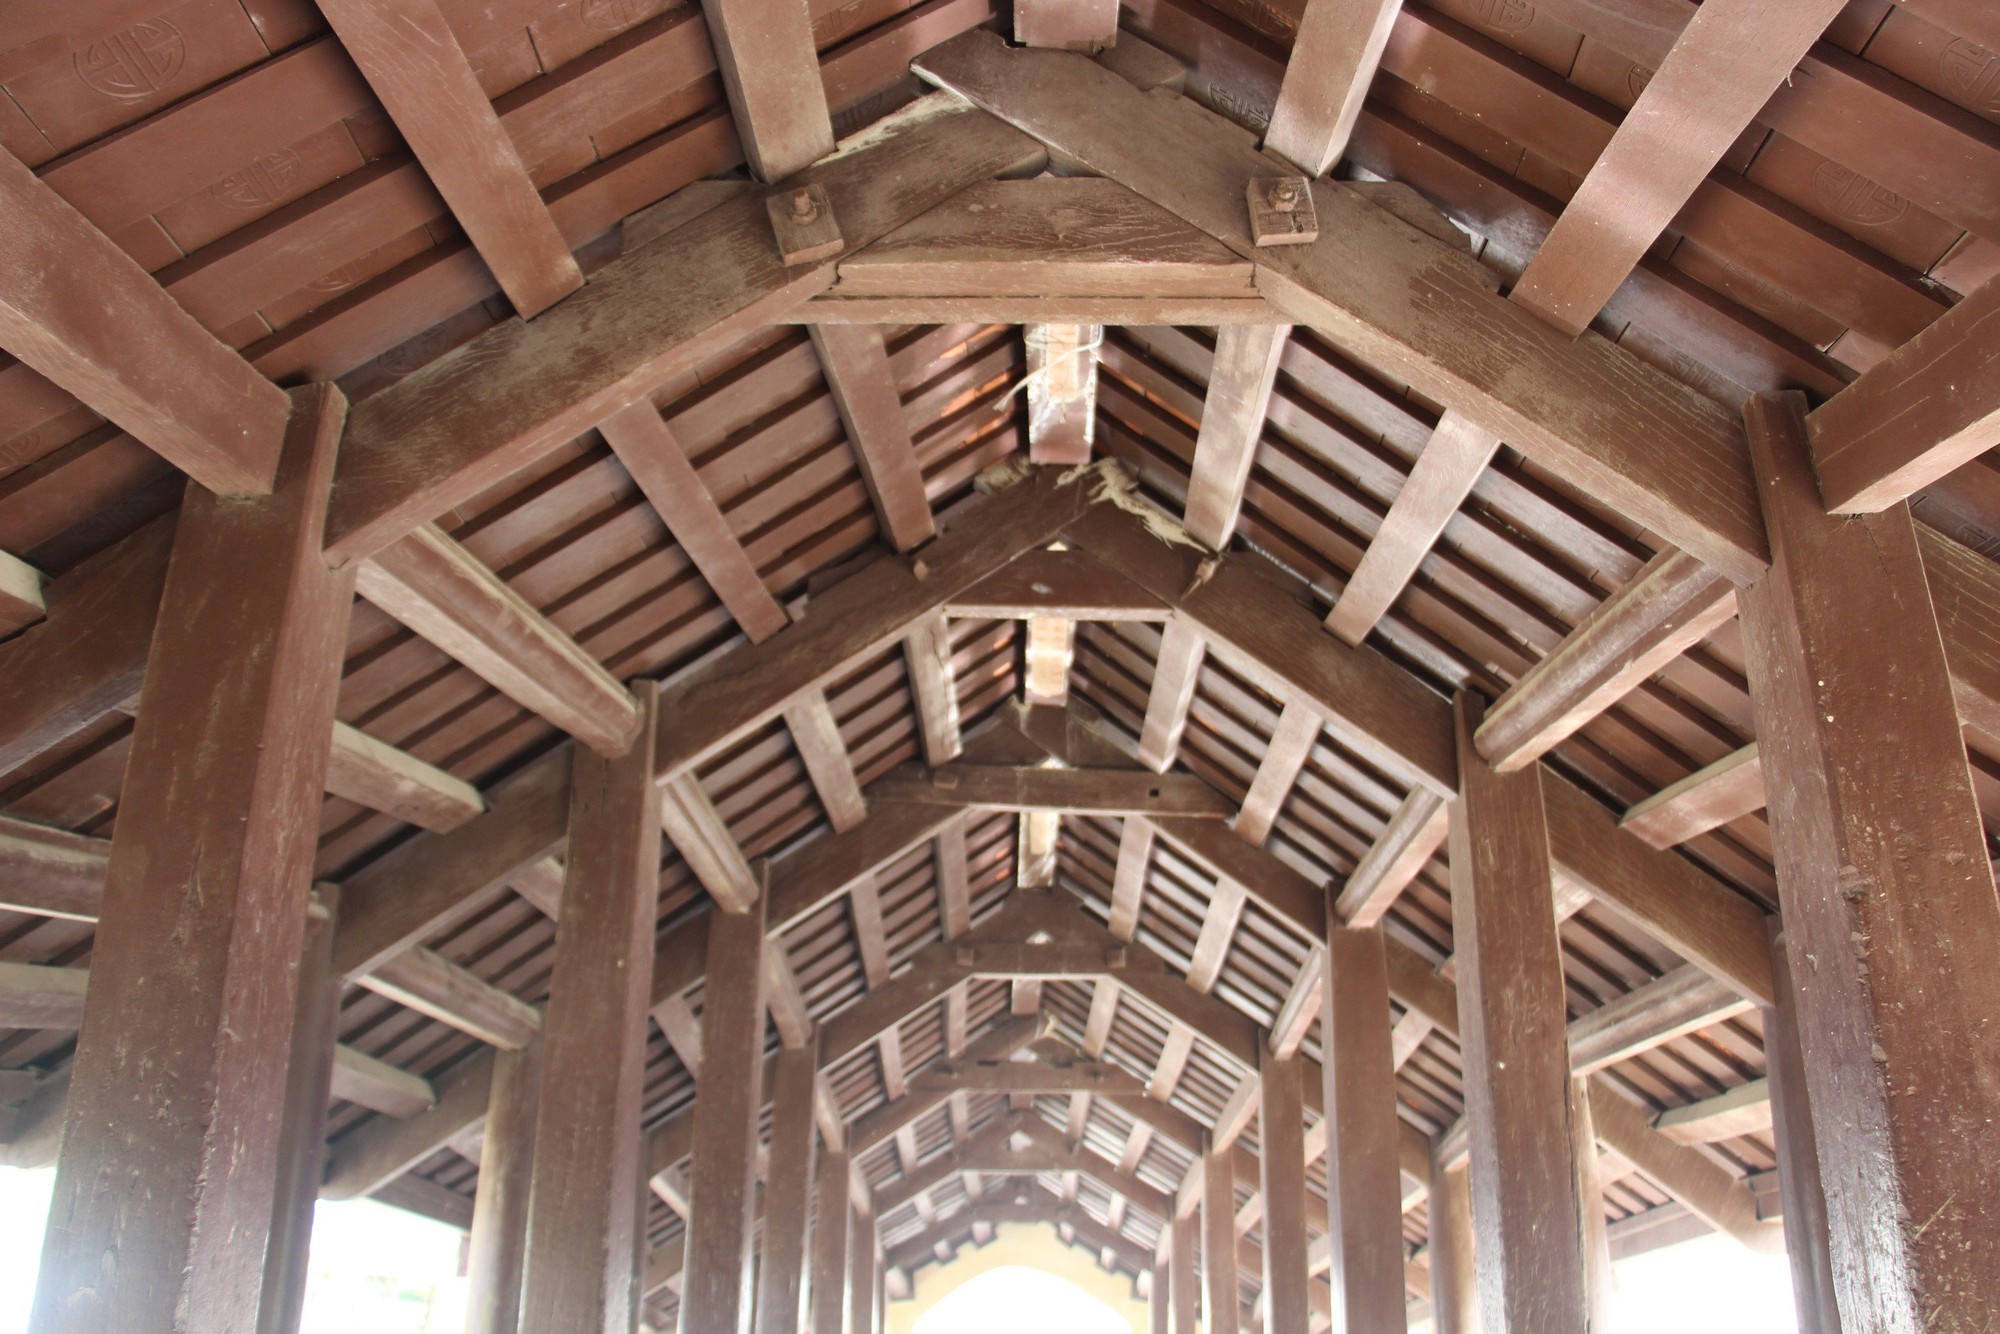  Ghé thăm cầu ngói Thượng Nông hơn 300 tuổi ở Nam Định - Ảnh 6.